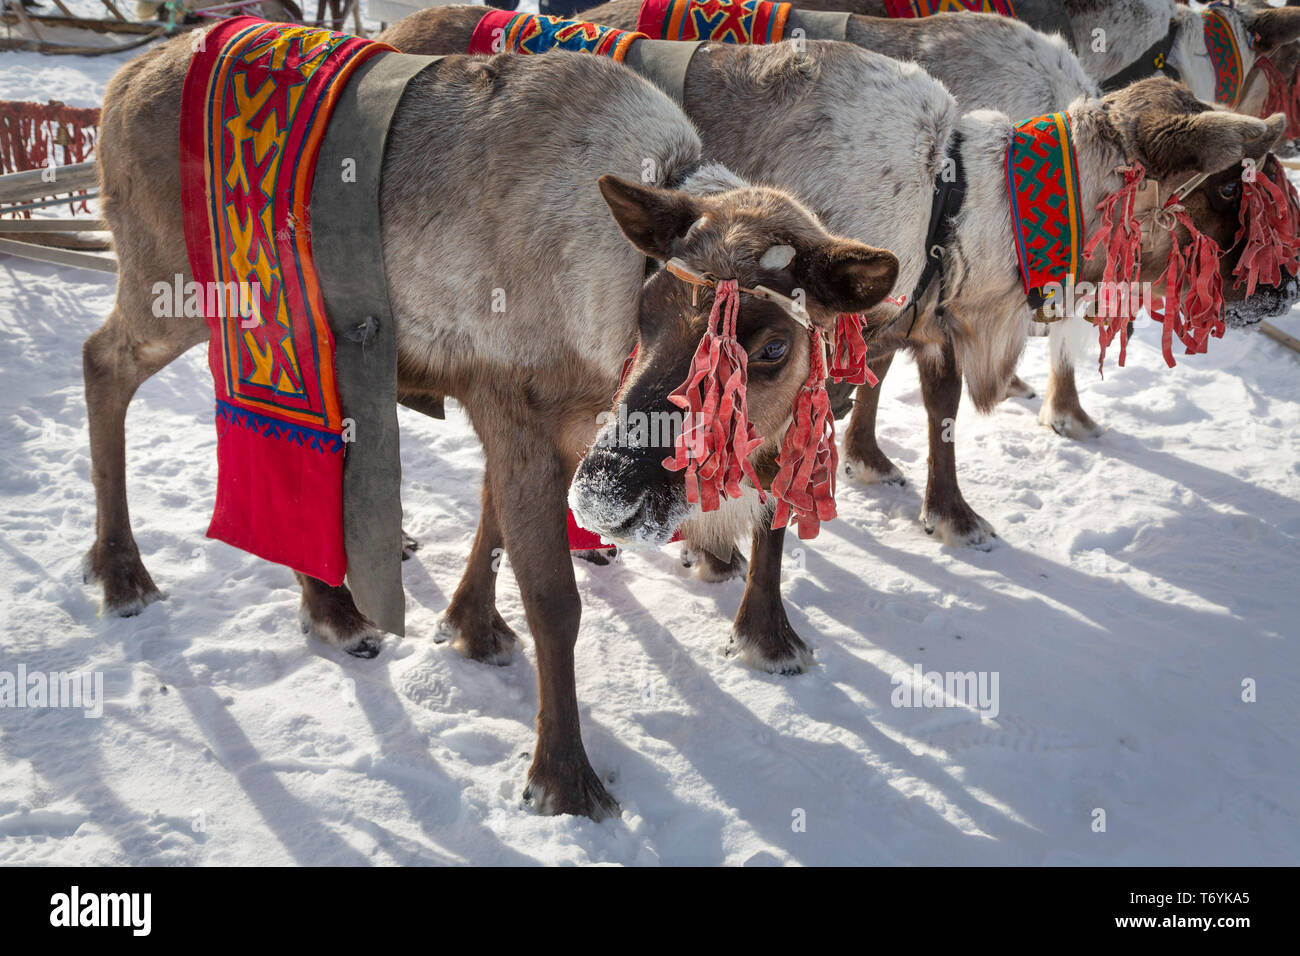 Russia, Yamal-Nenets Regione autonoma, penisola di Yamal, festival di renne. Renne tradizionale dettagli sul cablaggio. Foto Stock